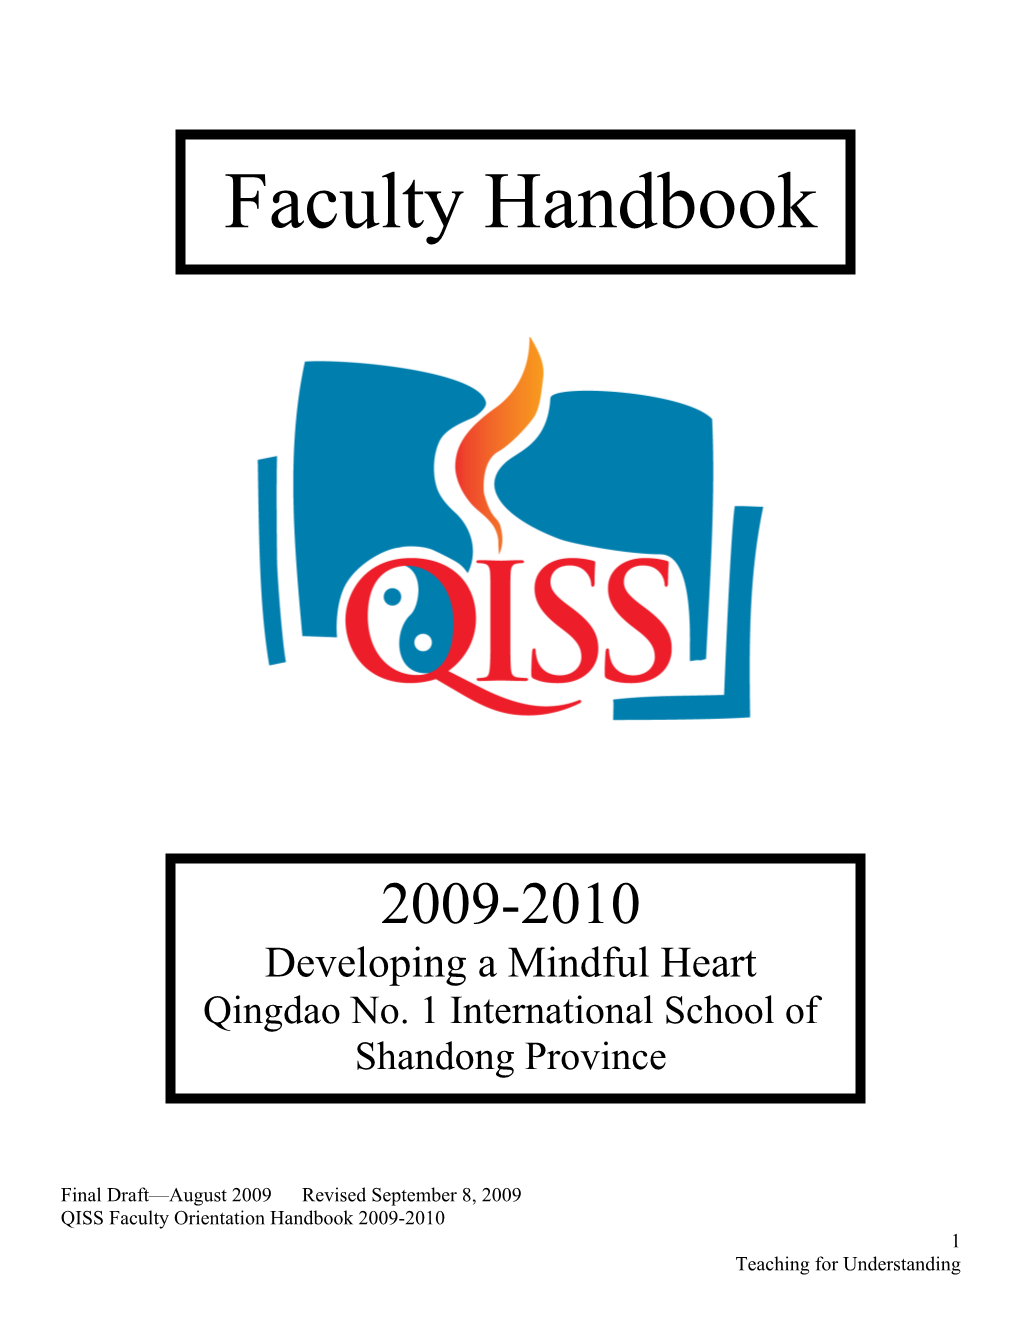 Faculty Orientation Handbook